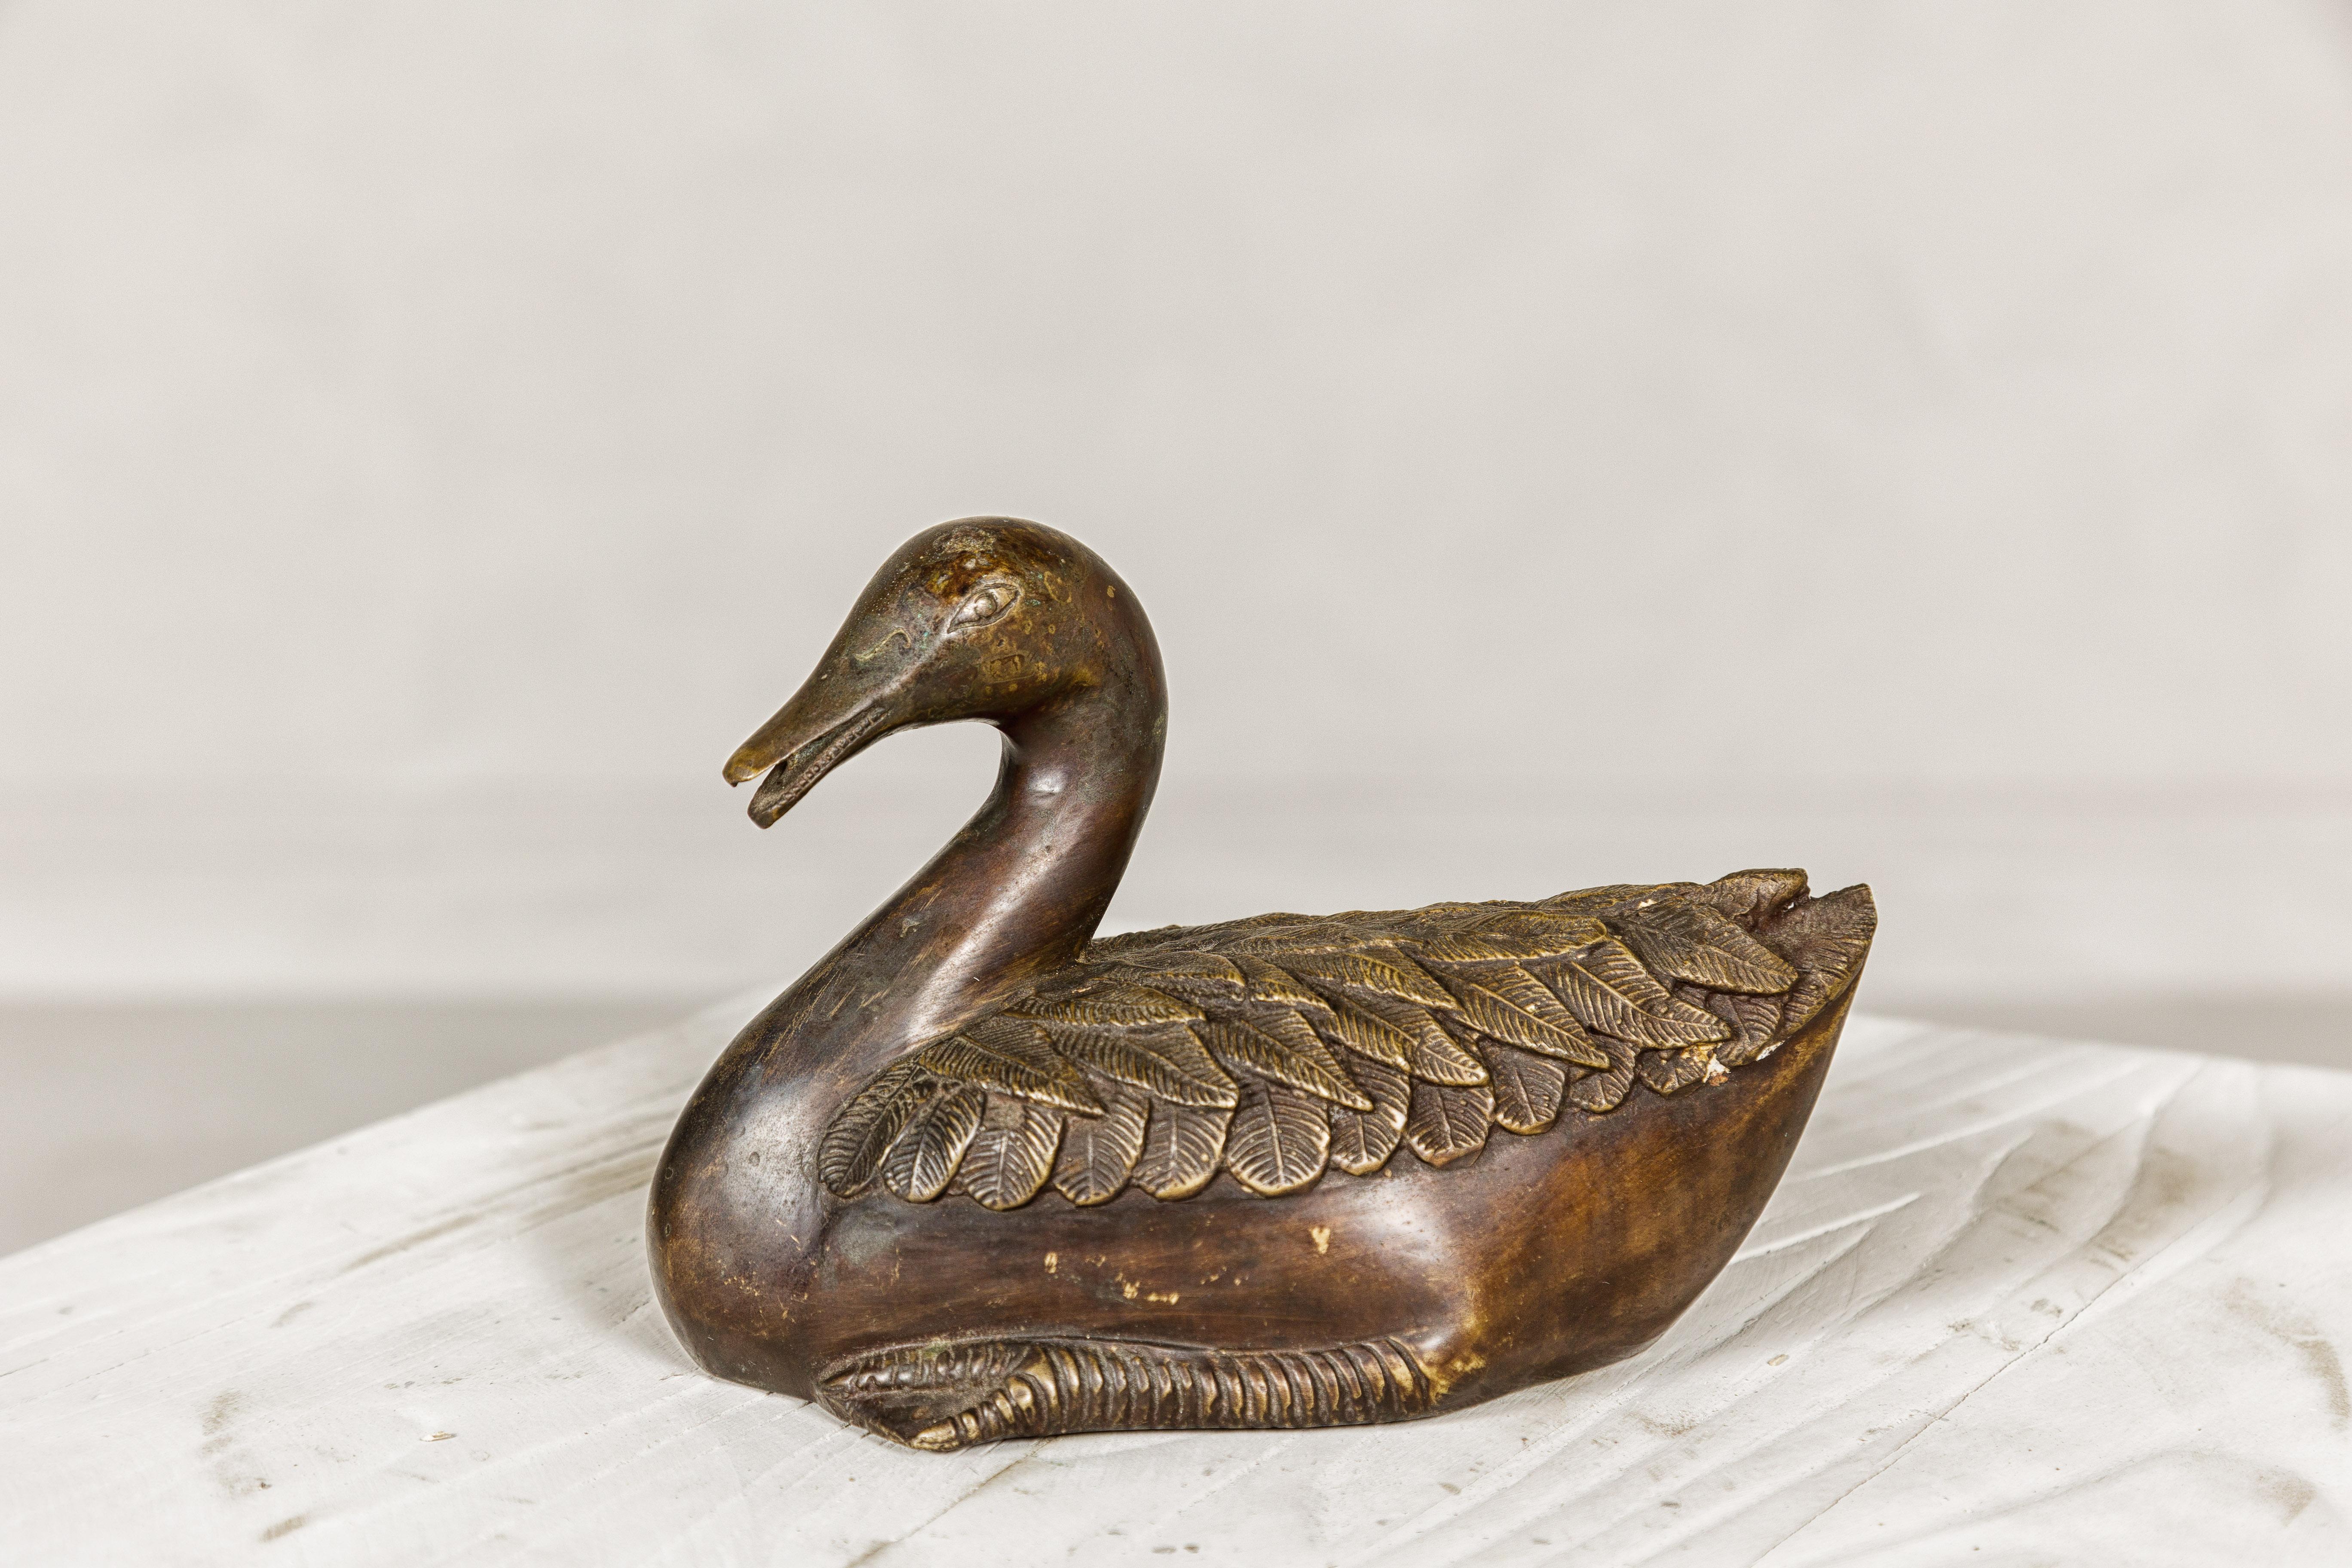 Cette statuette de table de canard en bronze vintage est une pièce charmante aux détails complexes, mettant en valeur le savoir-faire exquis du processus de la cire perdue. Les fins détails des plumes témoignent du travail méticuleux qui a présidé à